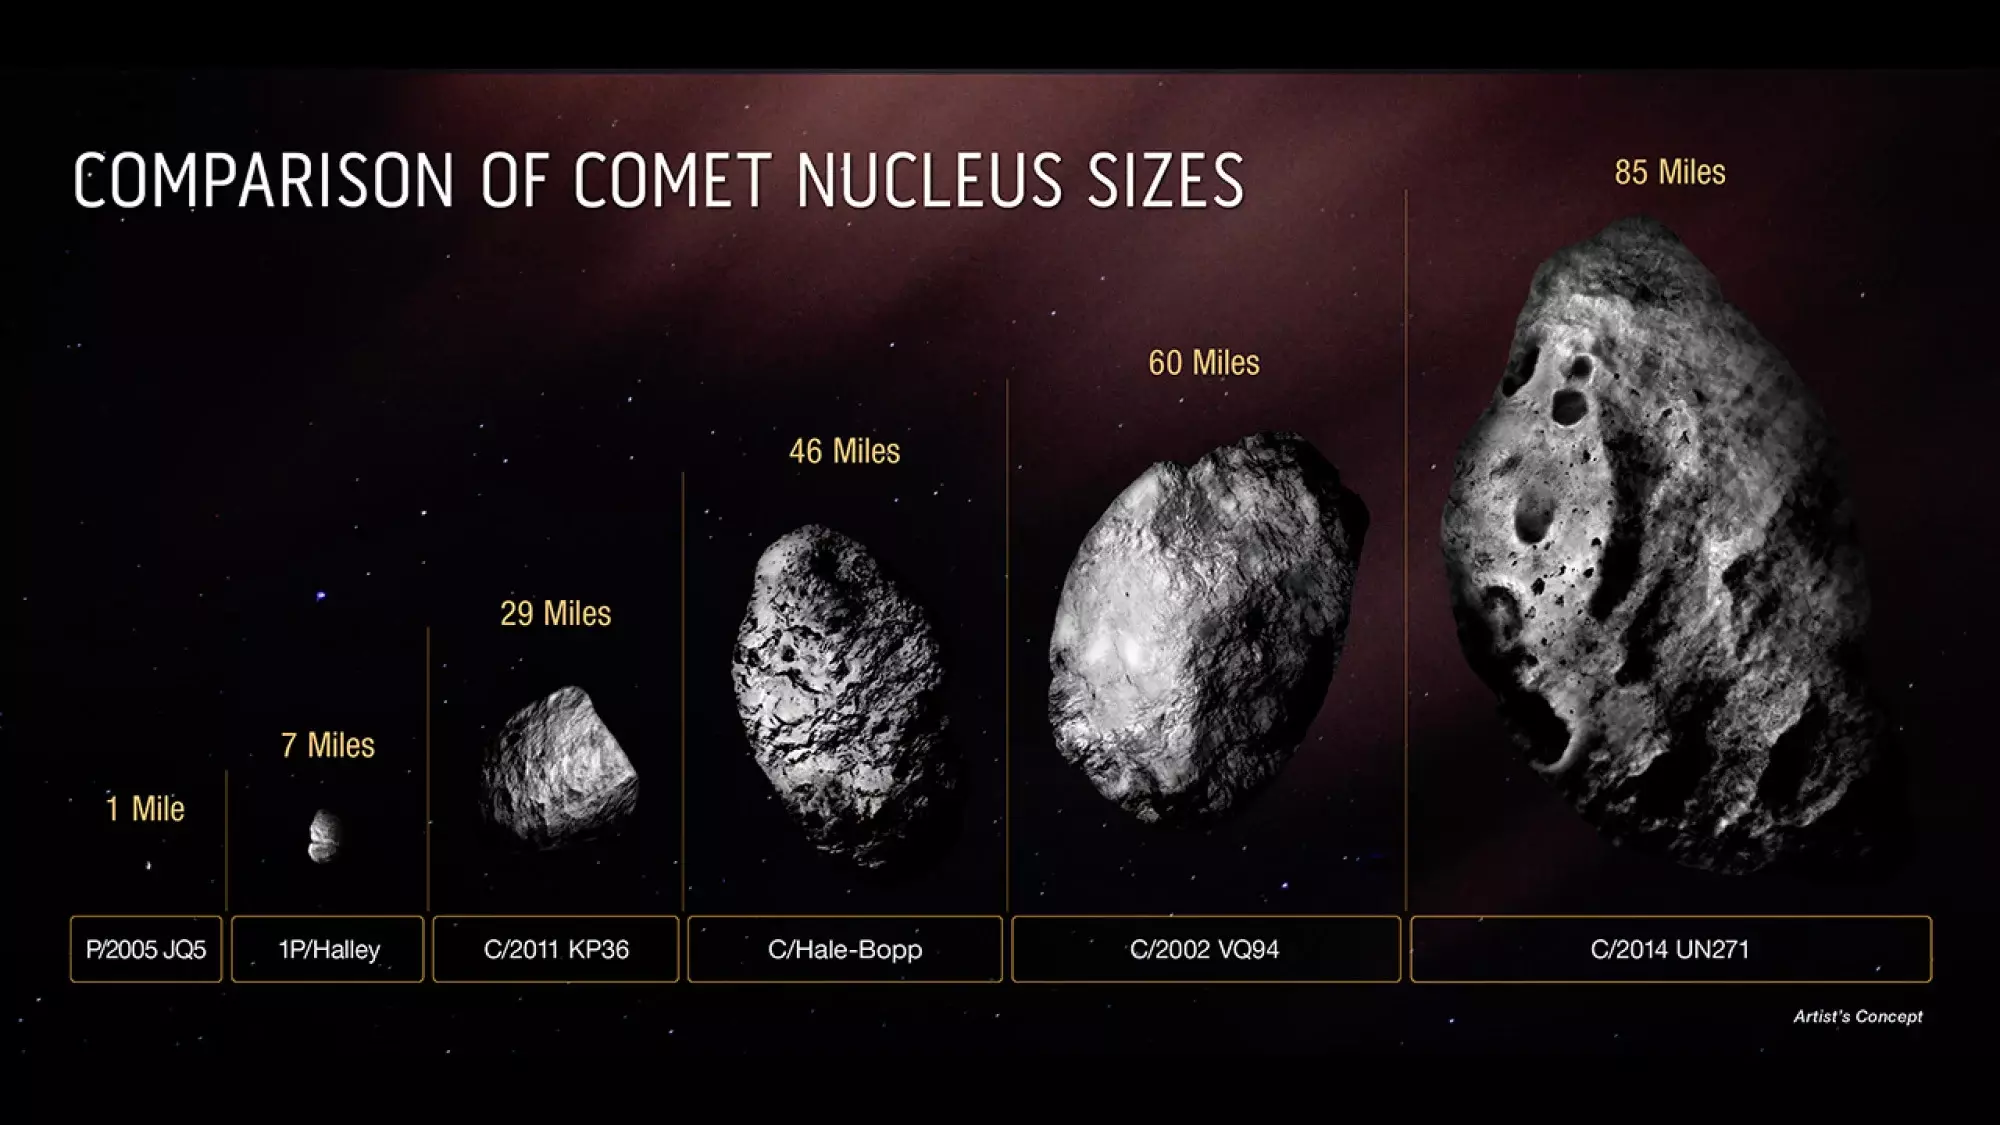 Comparing comet nucleus sizes